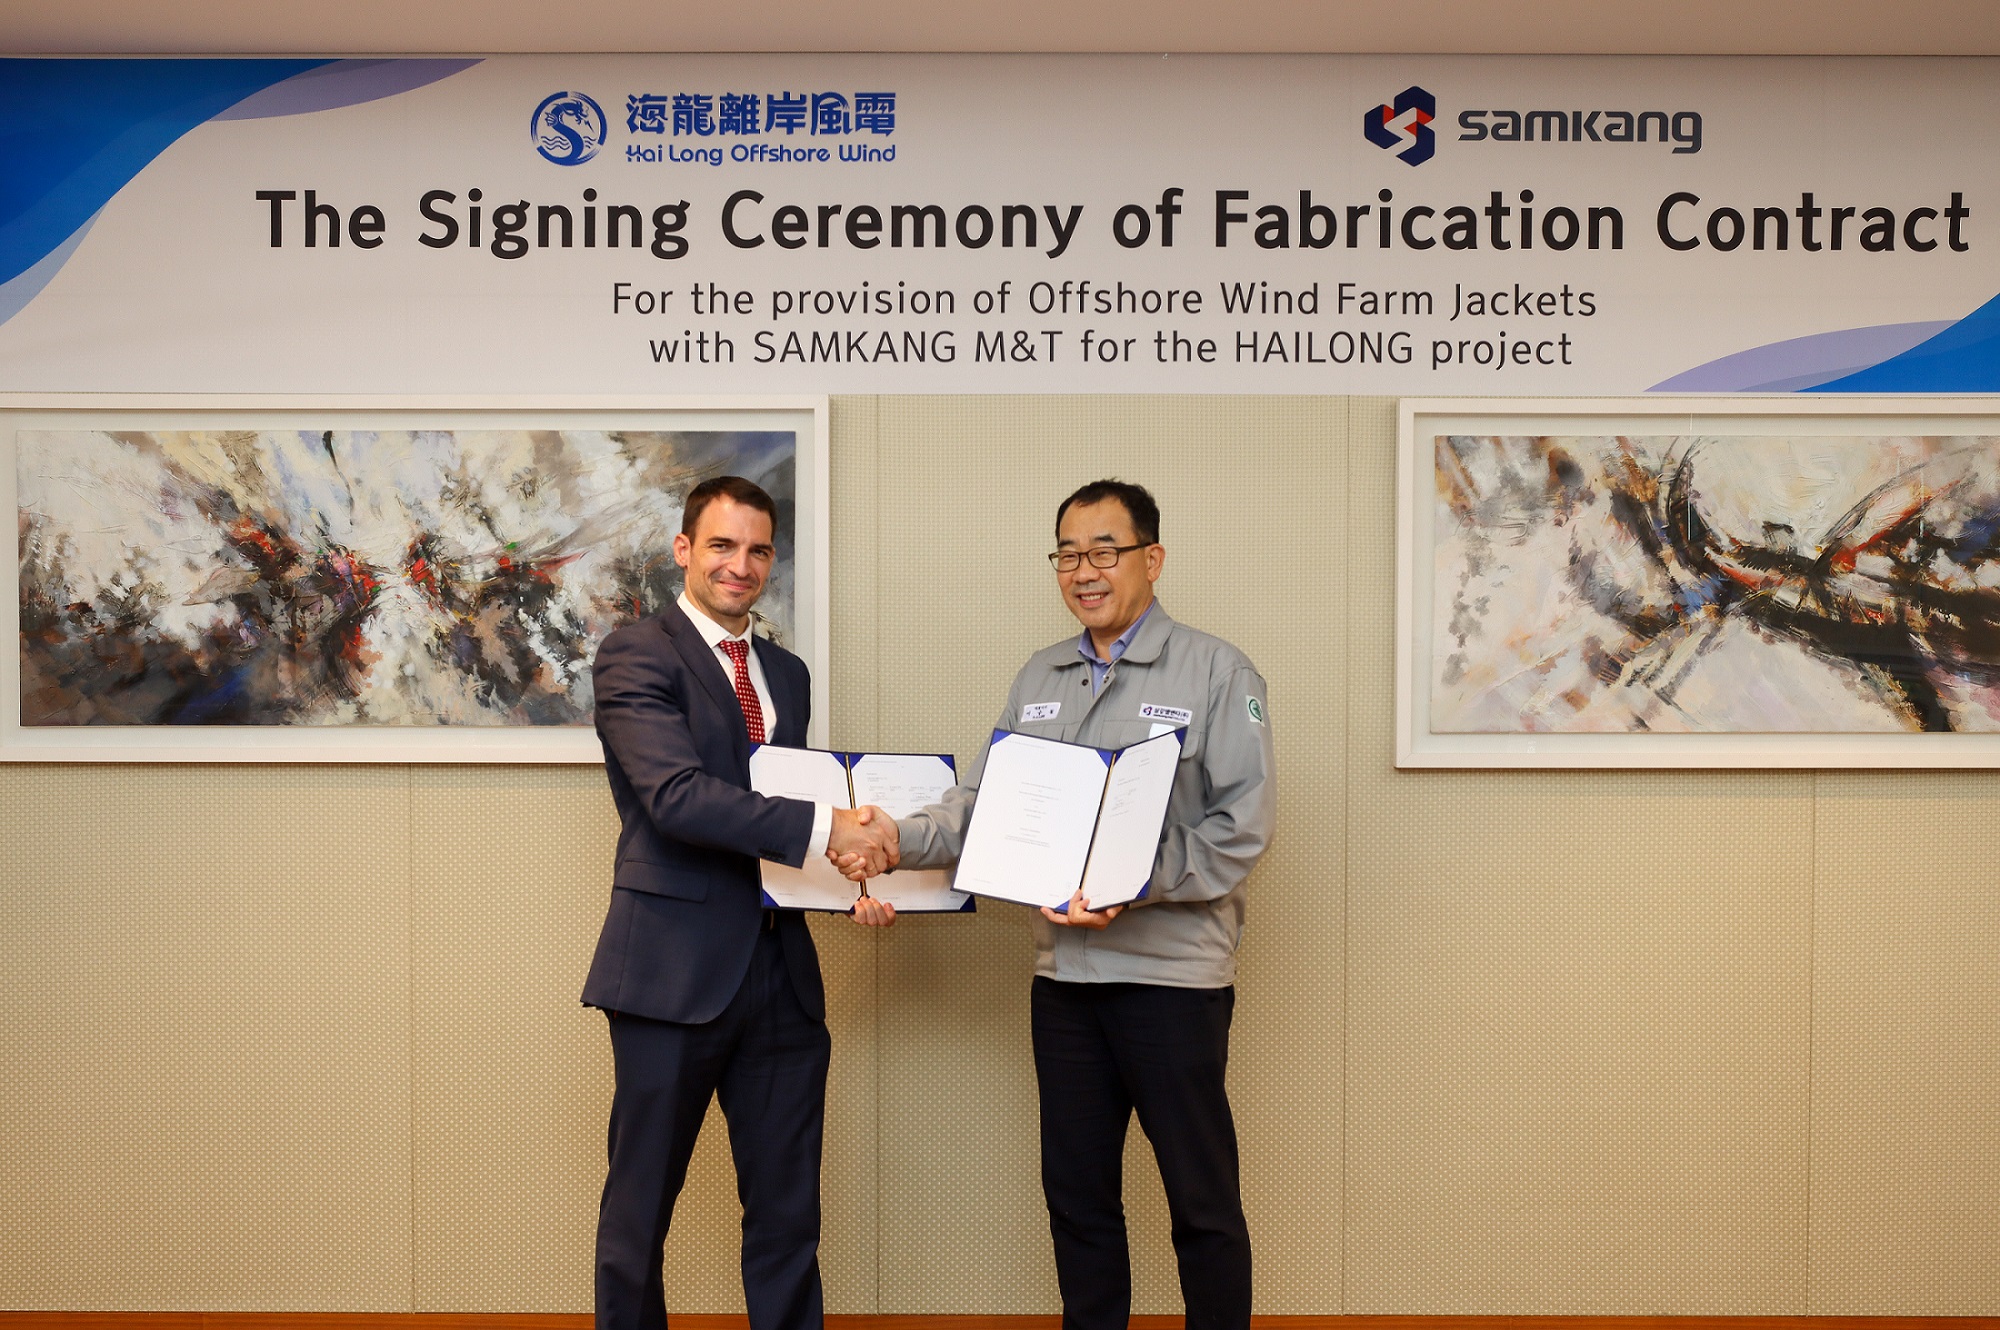 海龍離岸風電計畫與韓國 Samkang M&T 公司日前舉行了套筒式水下基礎製造合約簽約儀式。今年 1 月，Samkang M&T 已獲選為海龍的優先承攬商，雙方現已簽訂套筒式水下基礎製造合約。依據此合約，Samkang M&T 將在2024年12月底前供應海龍共52座套筒式水下基礎。